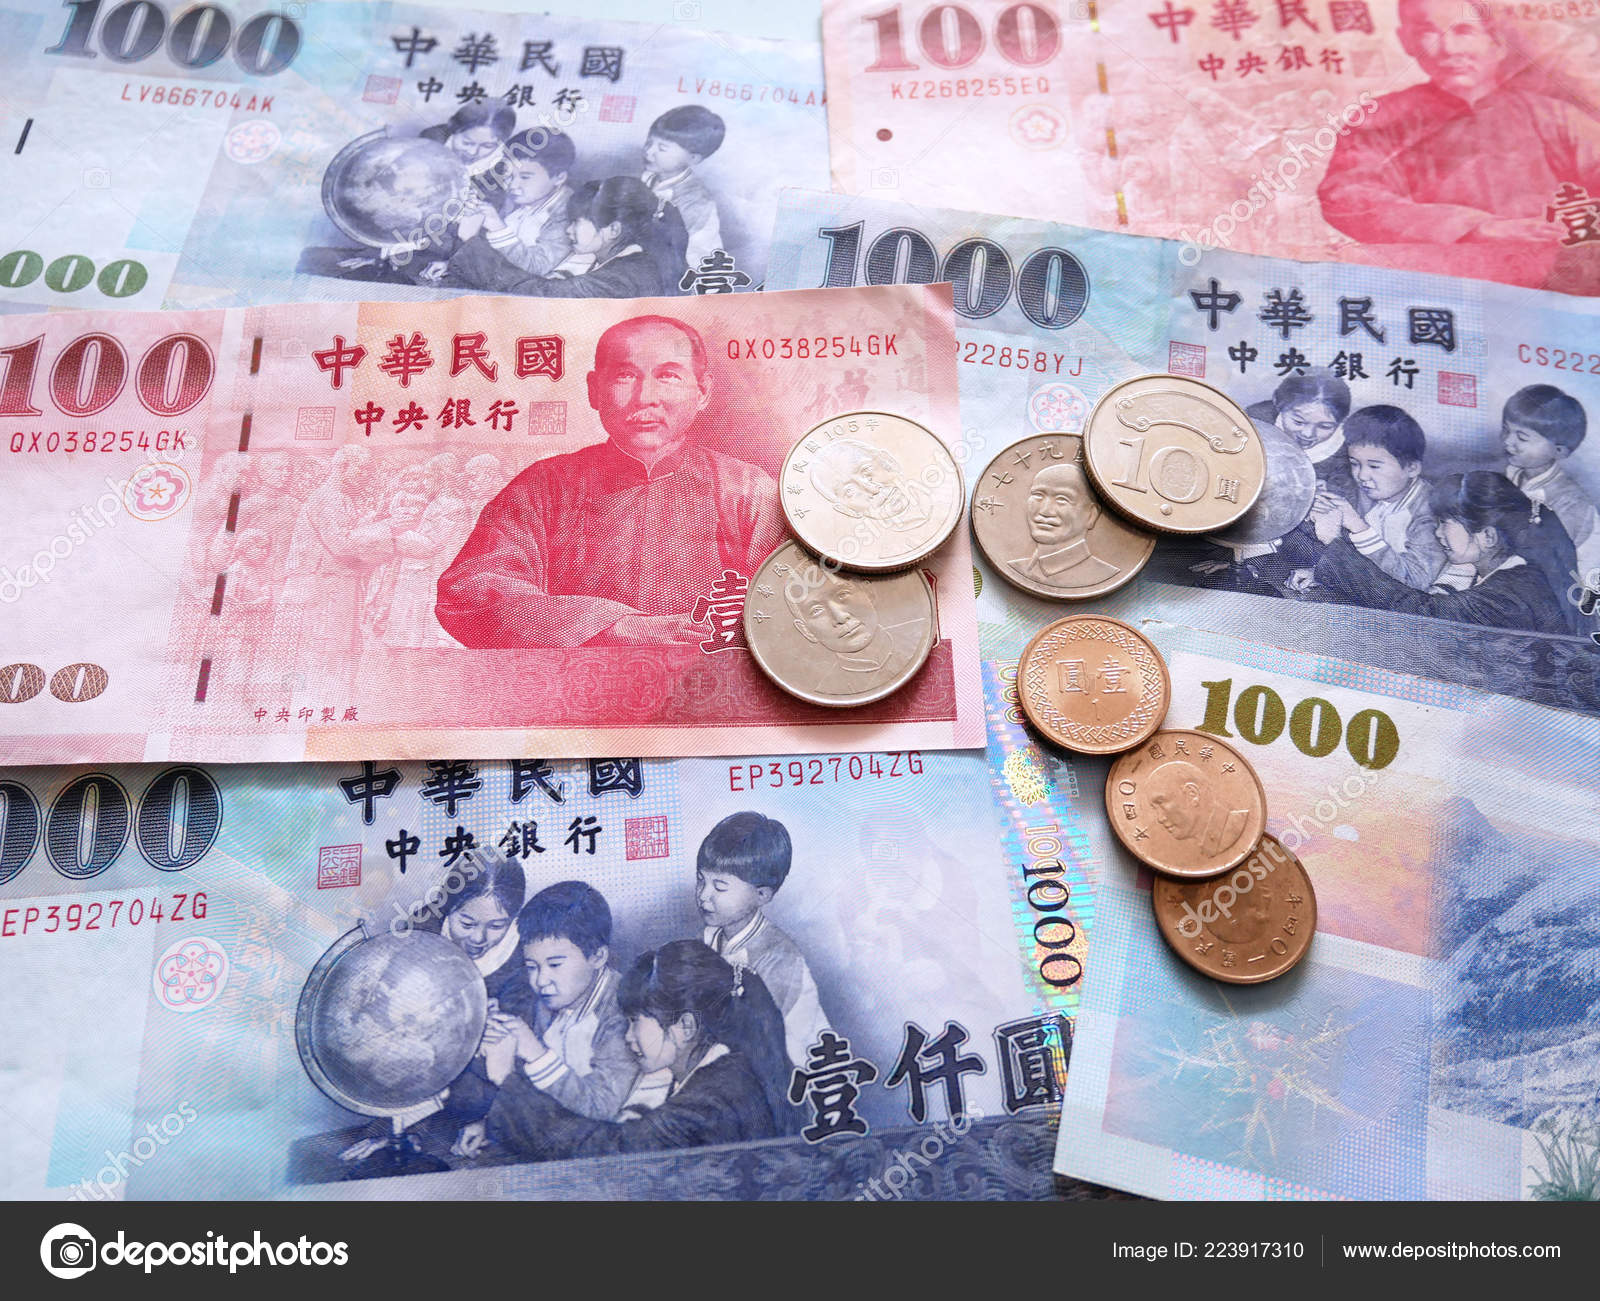 Тайвань деньги. Валюта Тайваня. Тайваньские деньги. Тайваньский доллар. Новый тайваньский доллар банкноты.